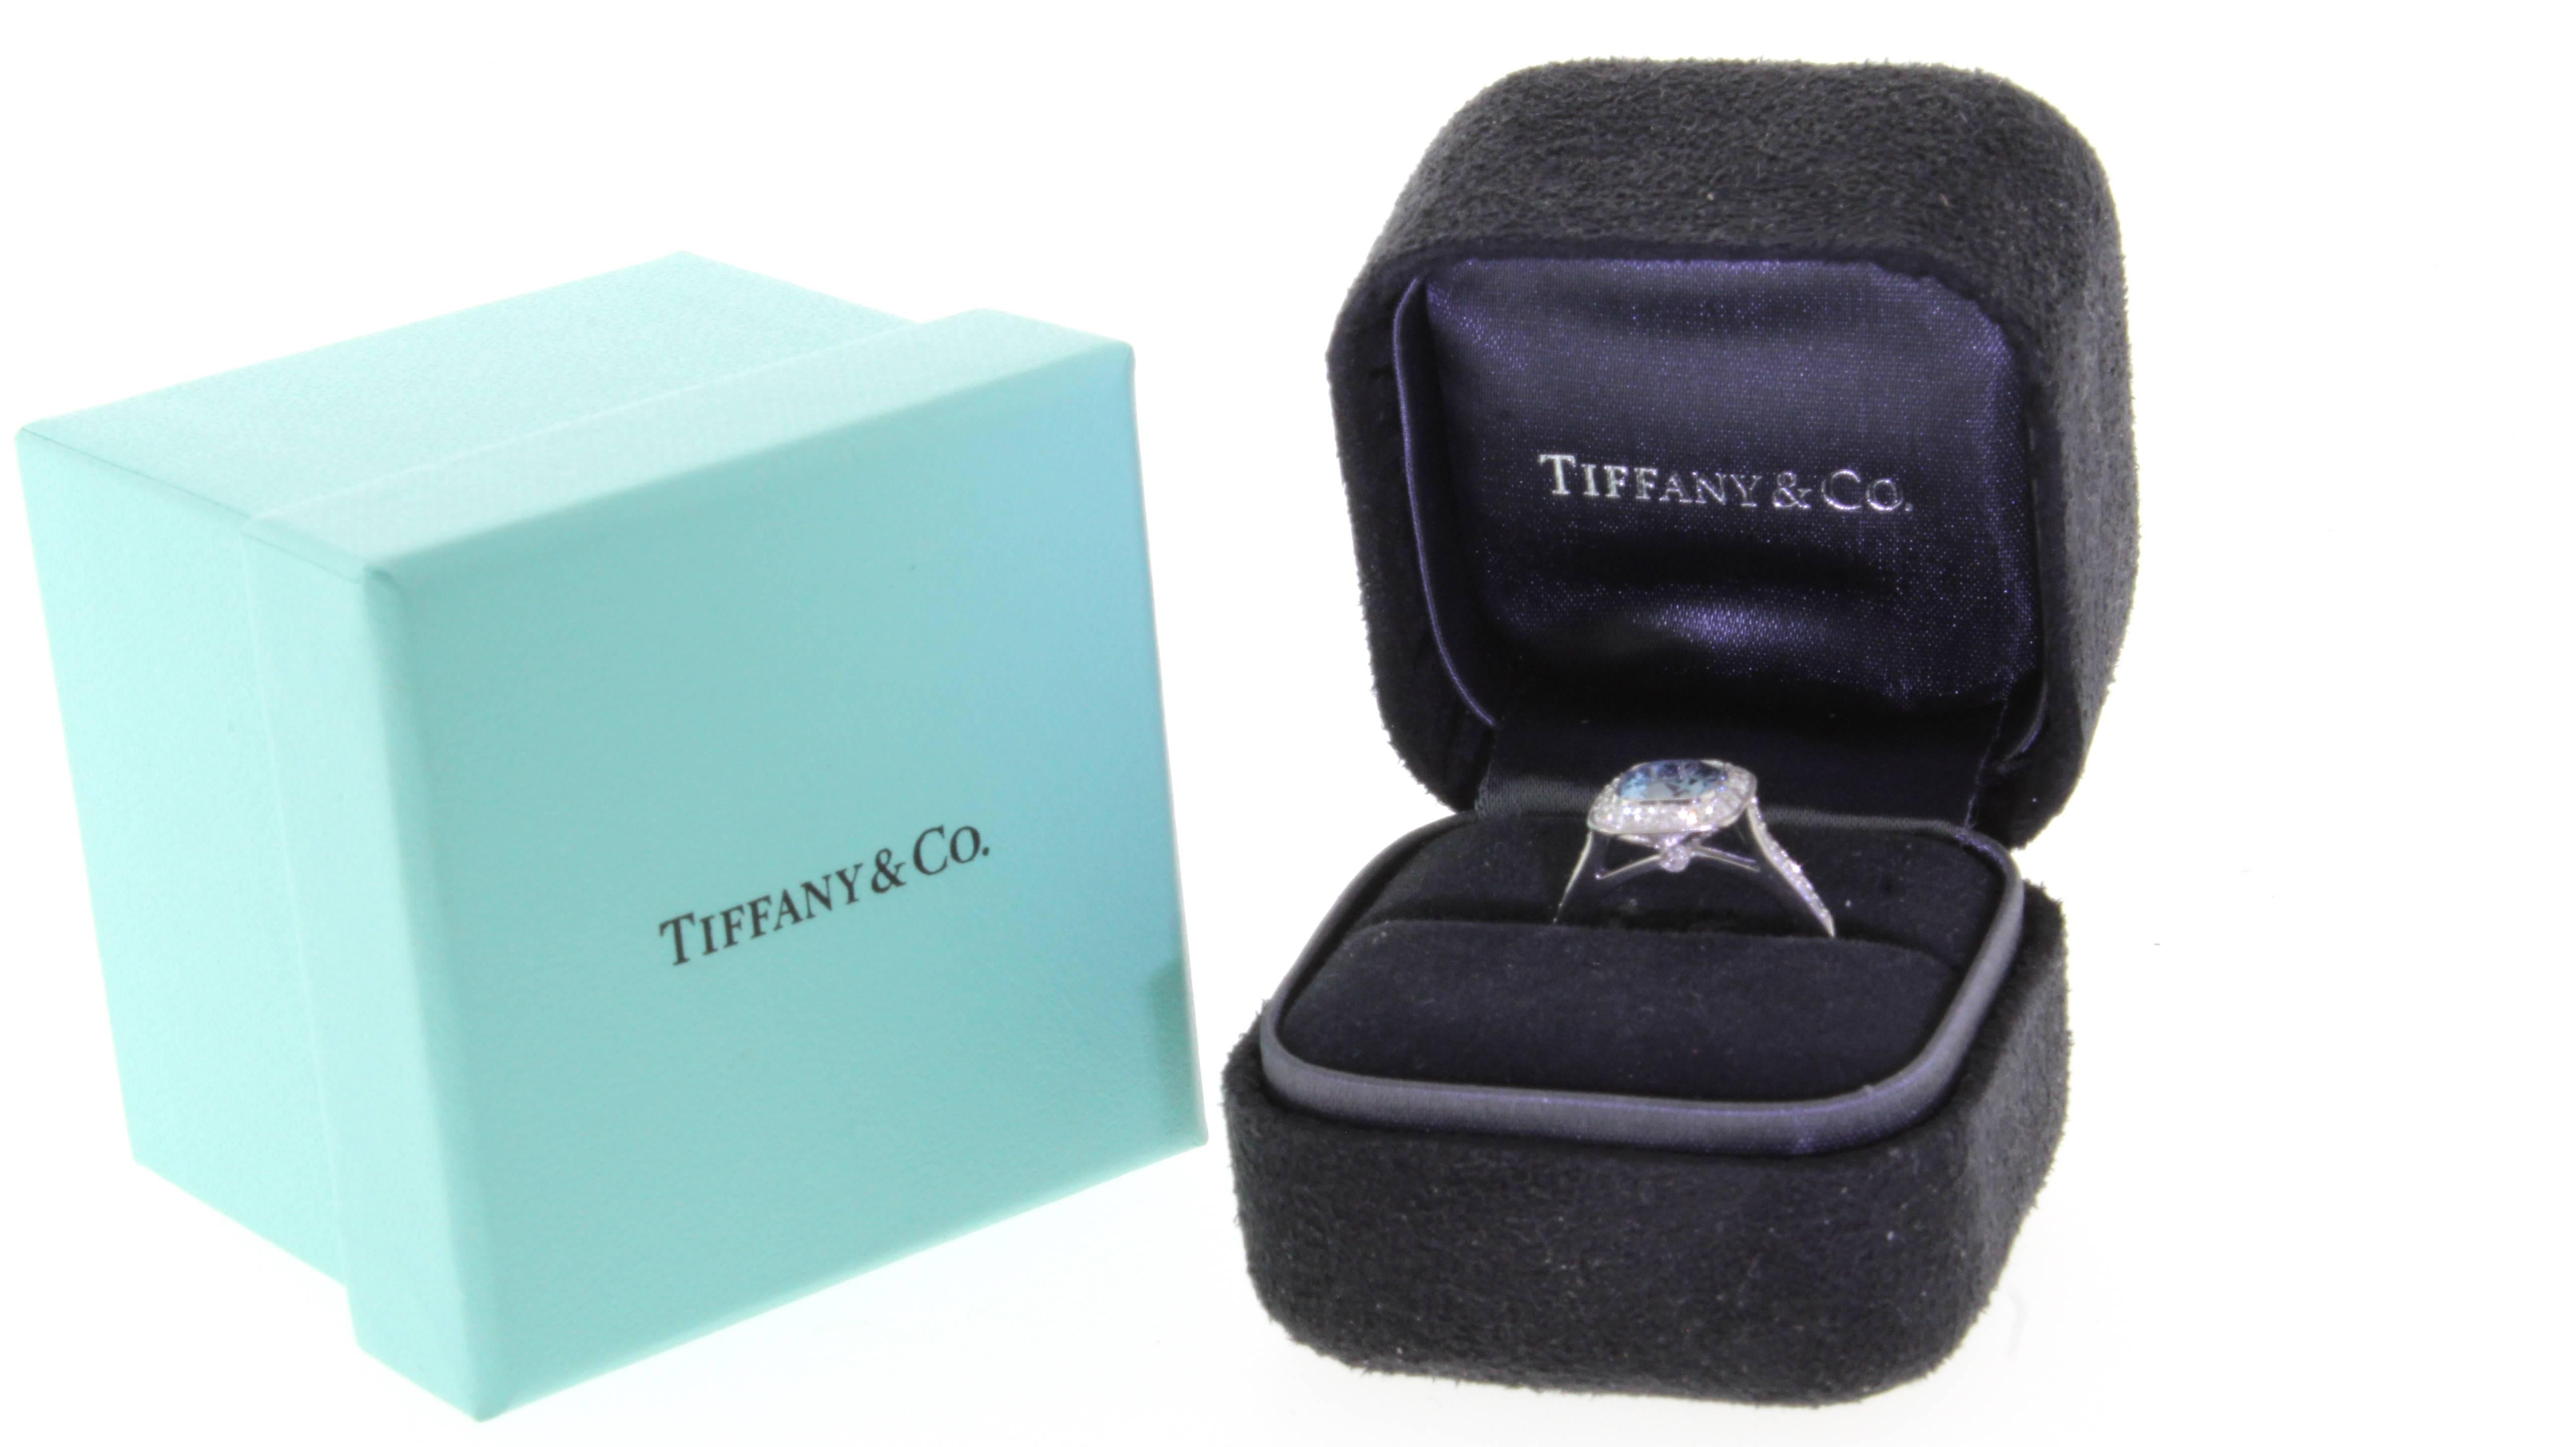 tiffany legacy aquamarine ring